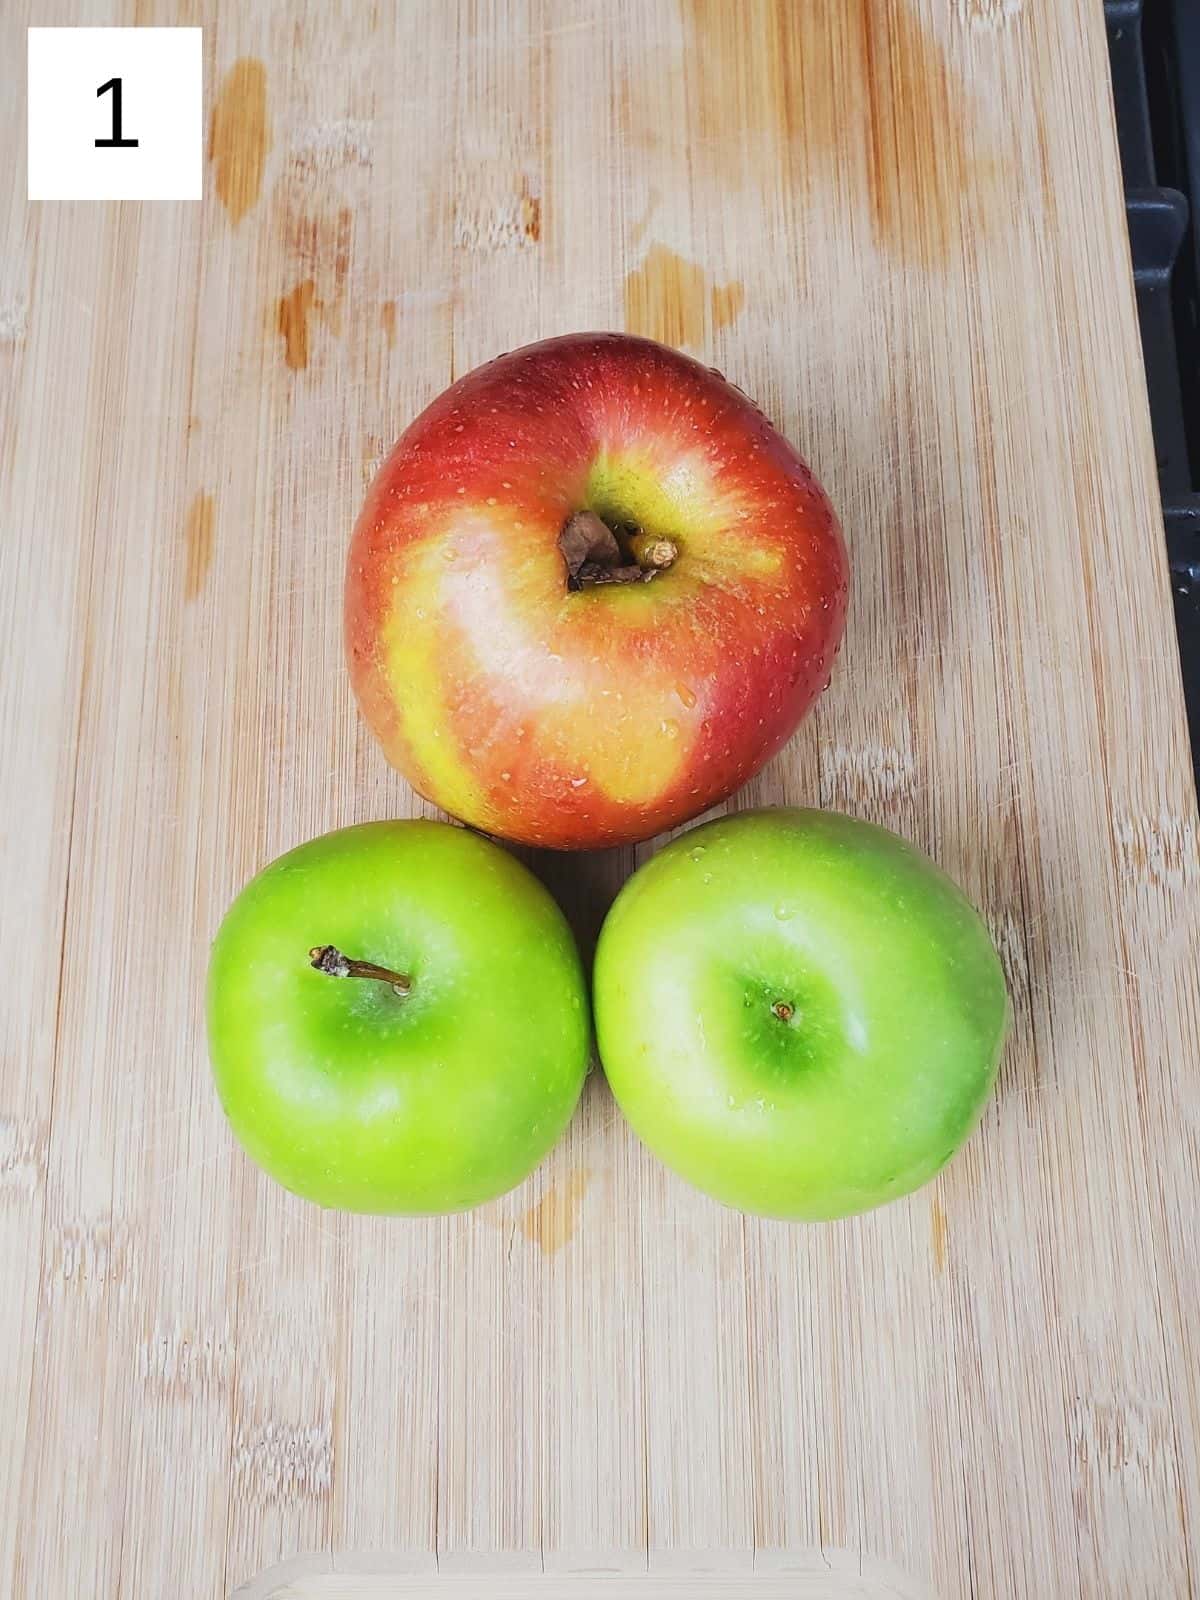 three medium-sized apples on a wooden cutting board.